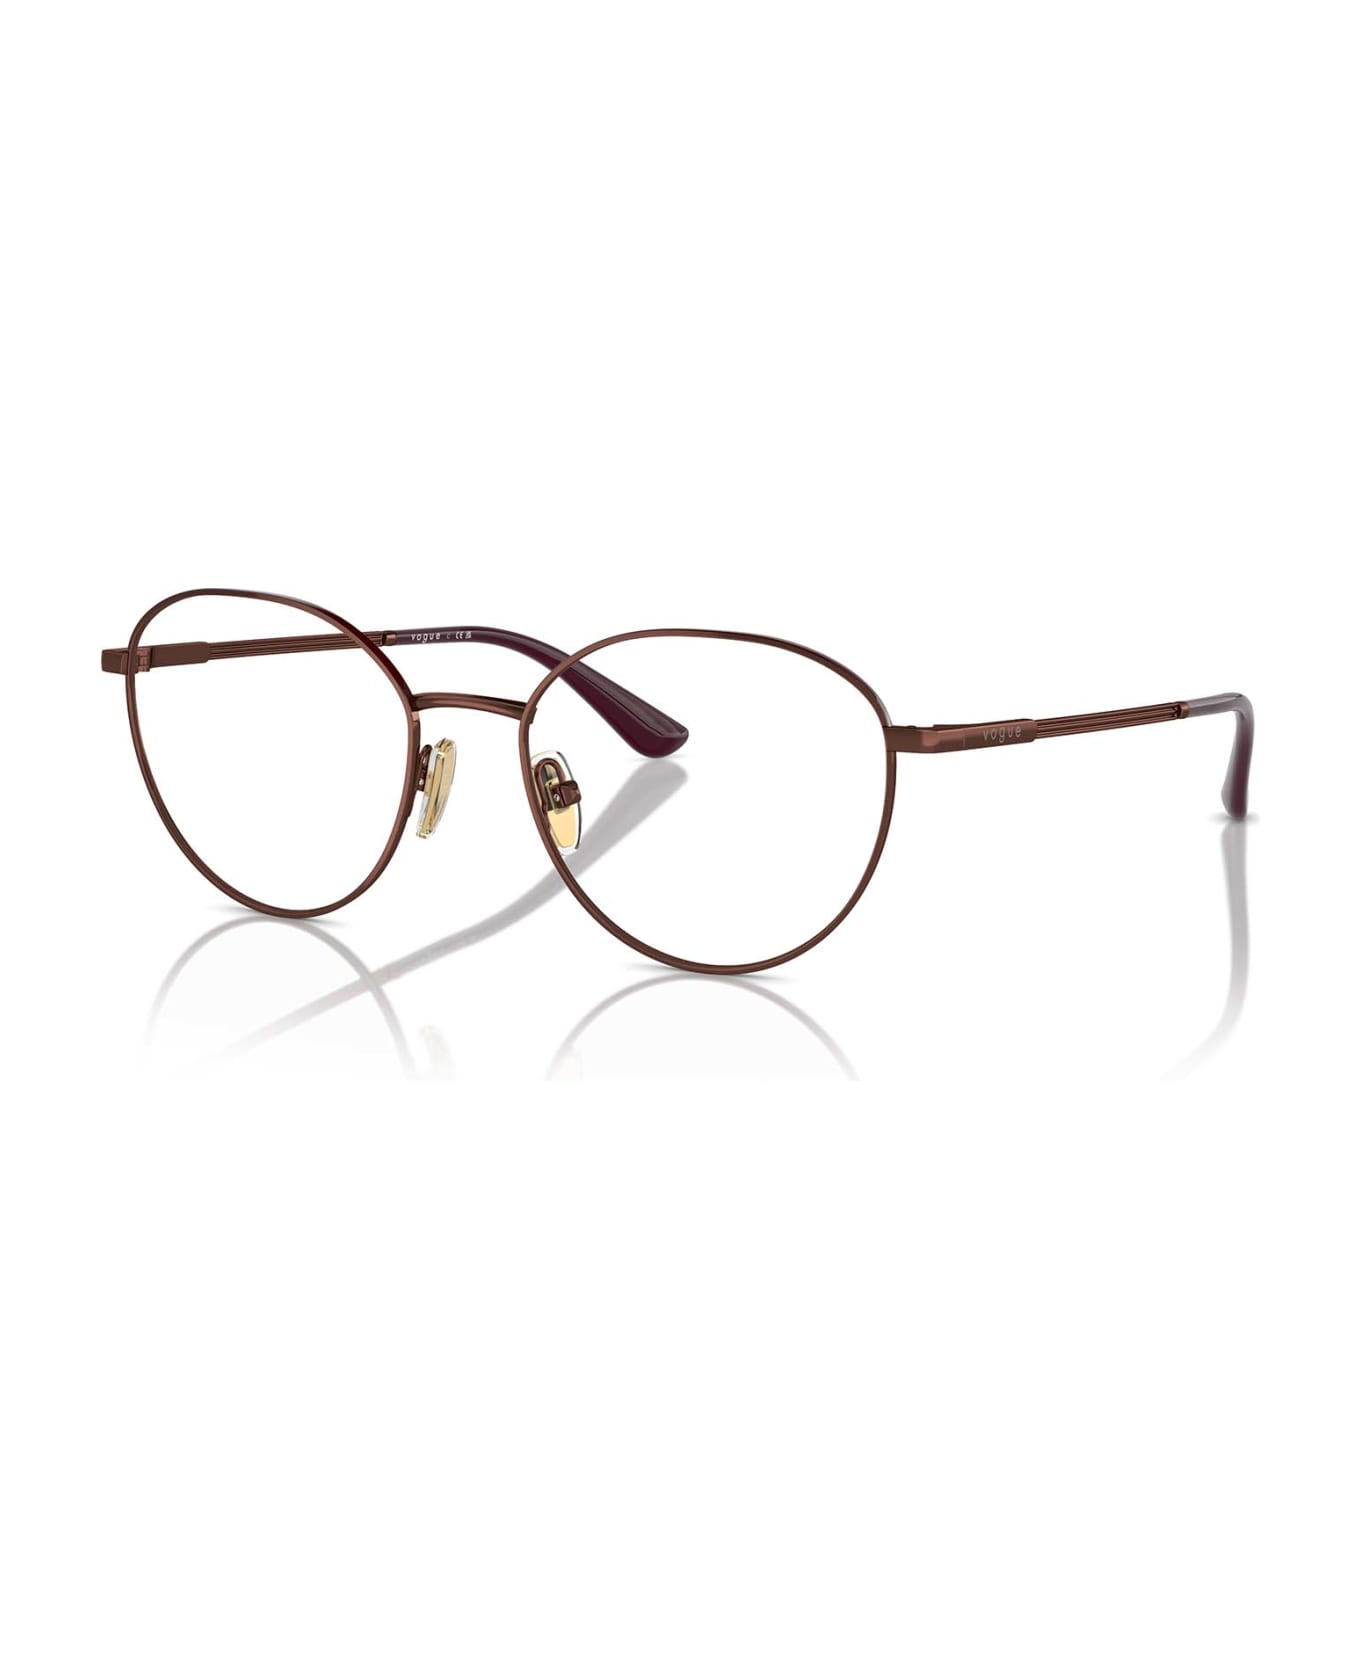 Vogue Eyewear Vo4306 Copper / Top Bordeaux Glasses - Copper / Top Bordeaux